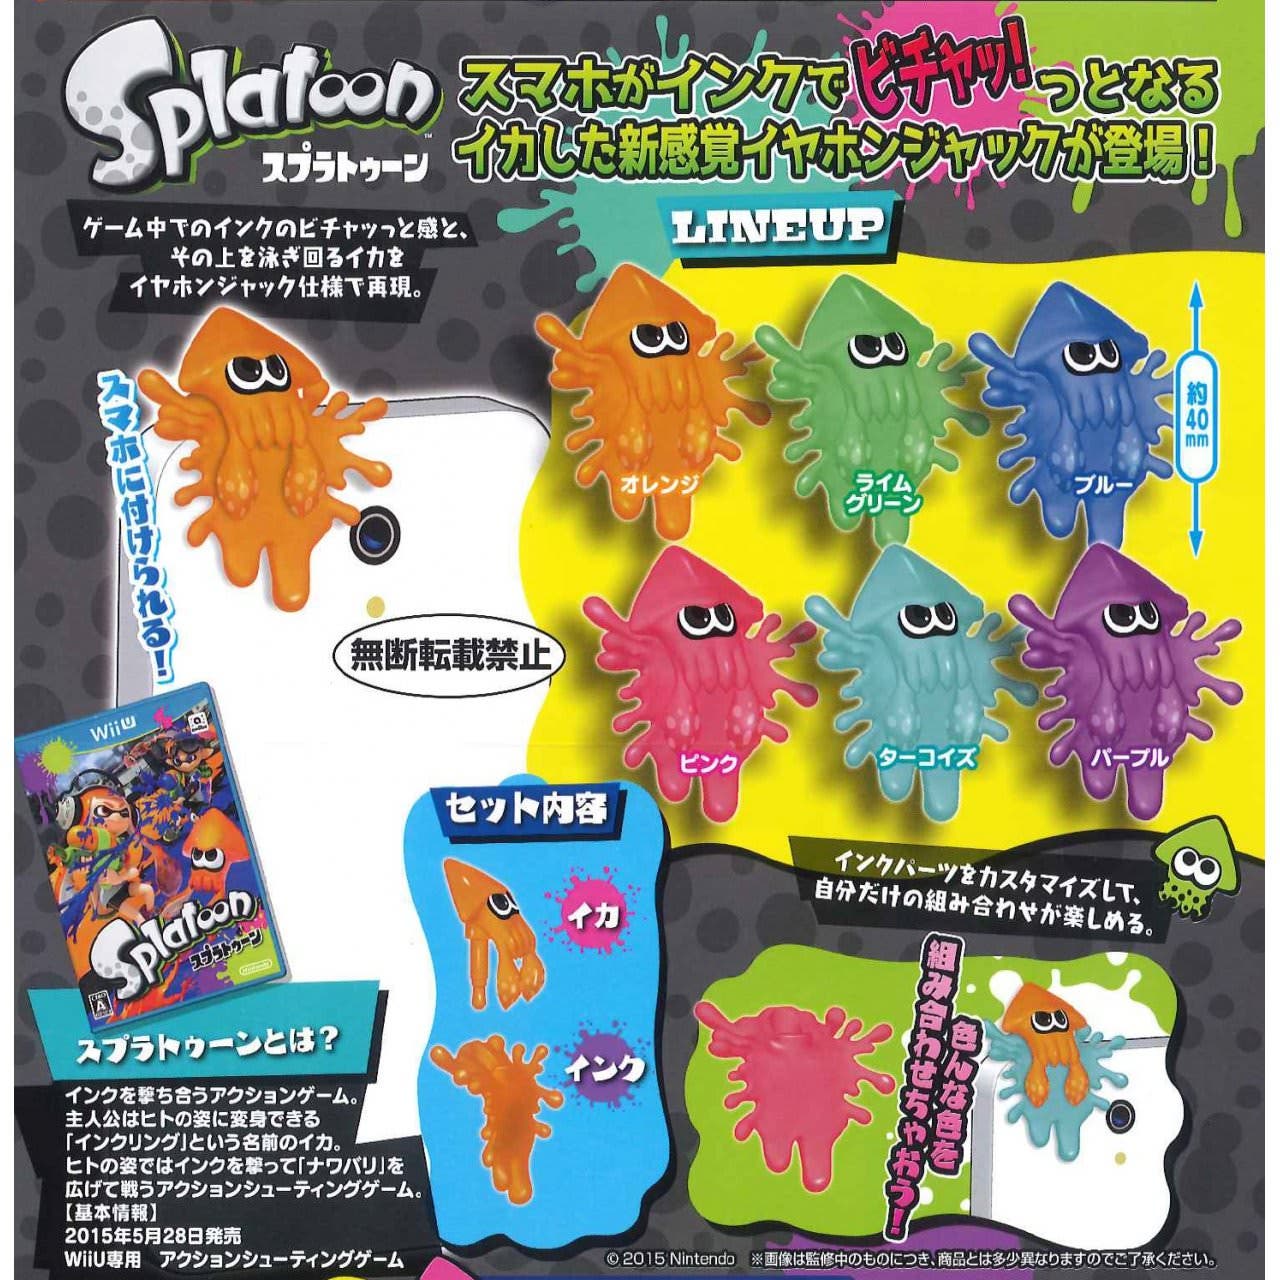 Accesorio de ‘Splatoon’ para el conector jack del movil disponible en Japón